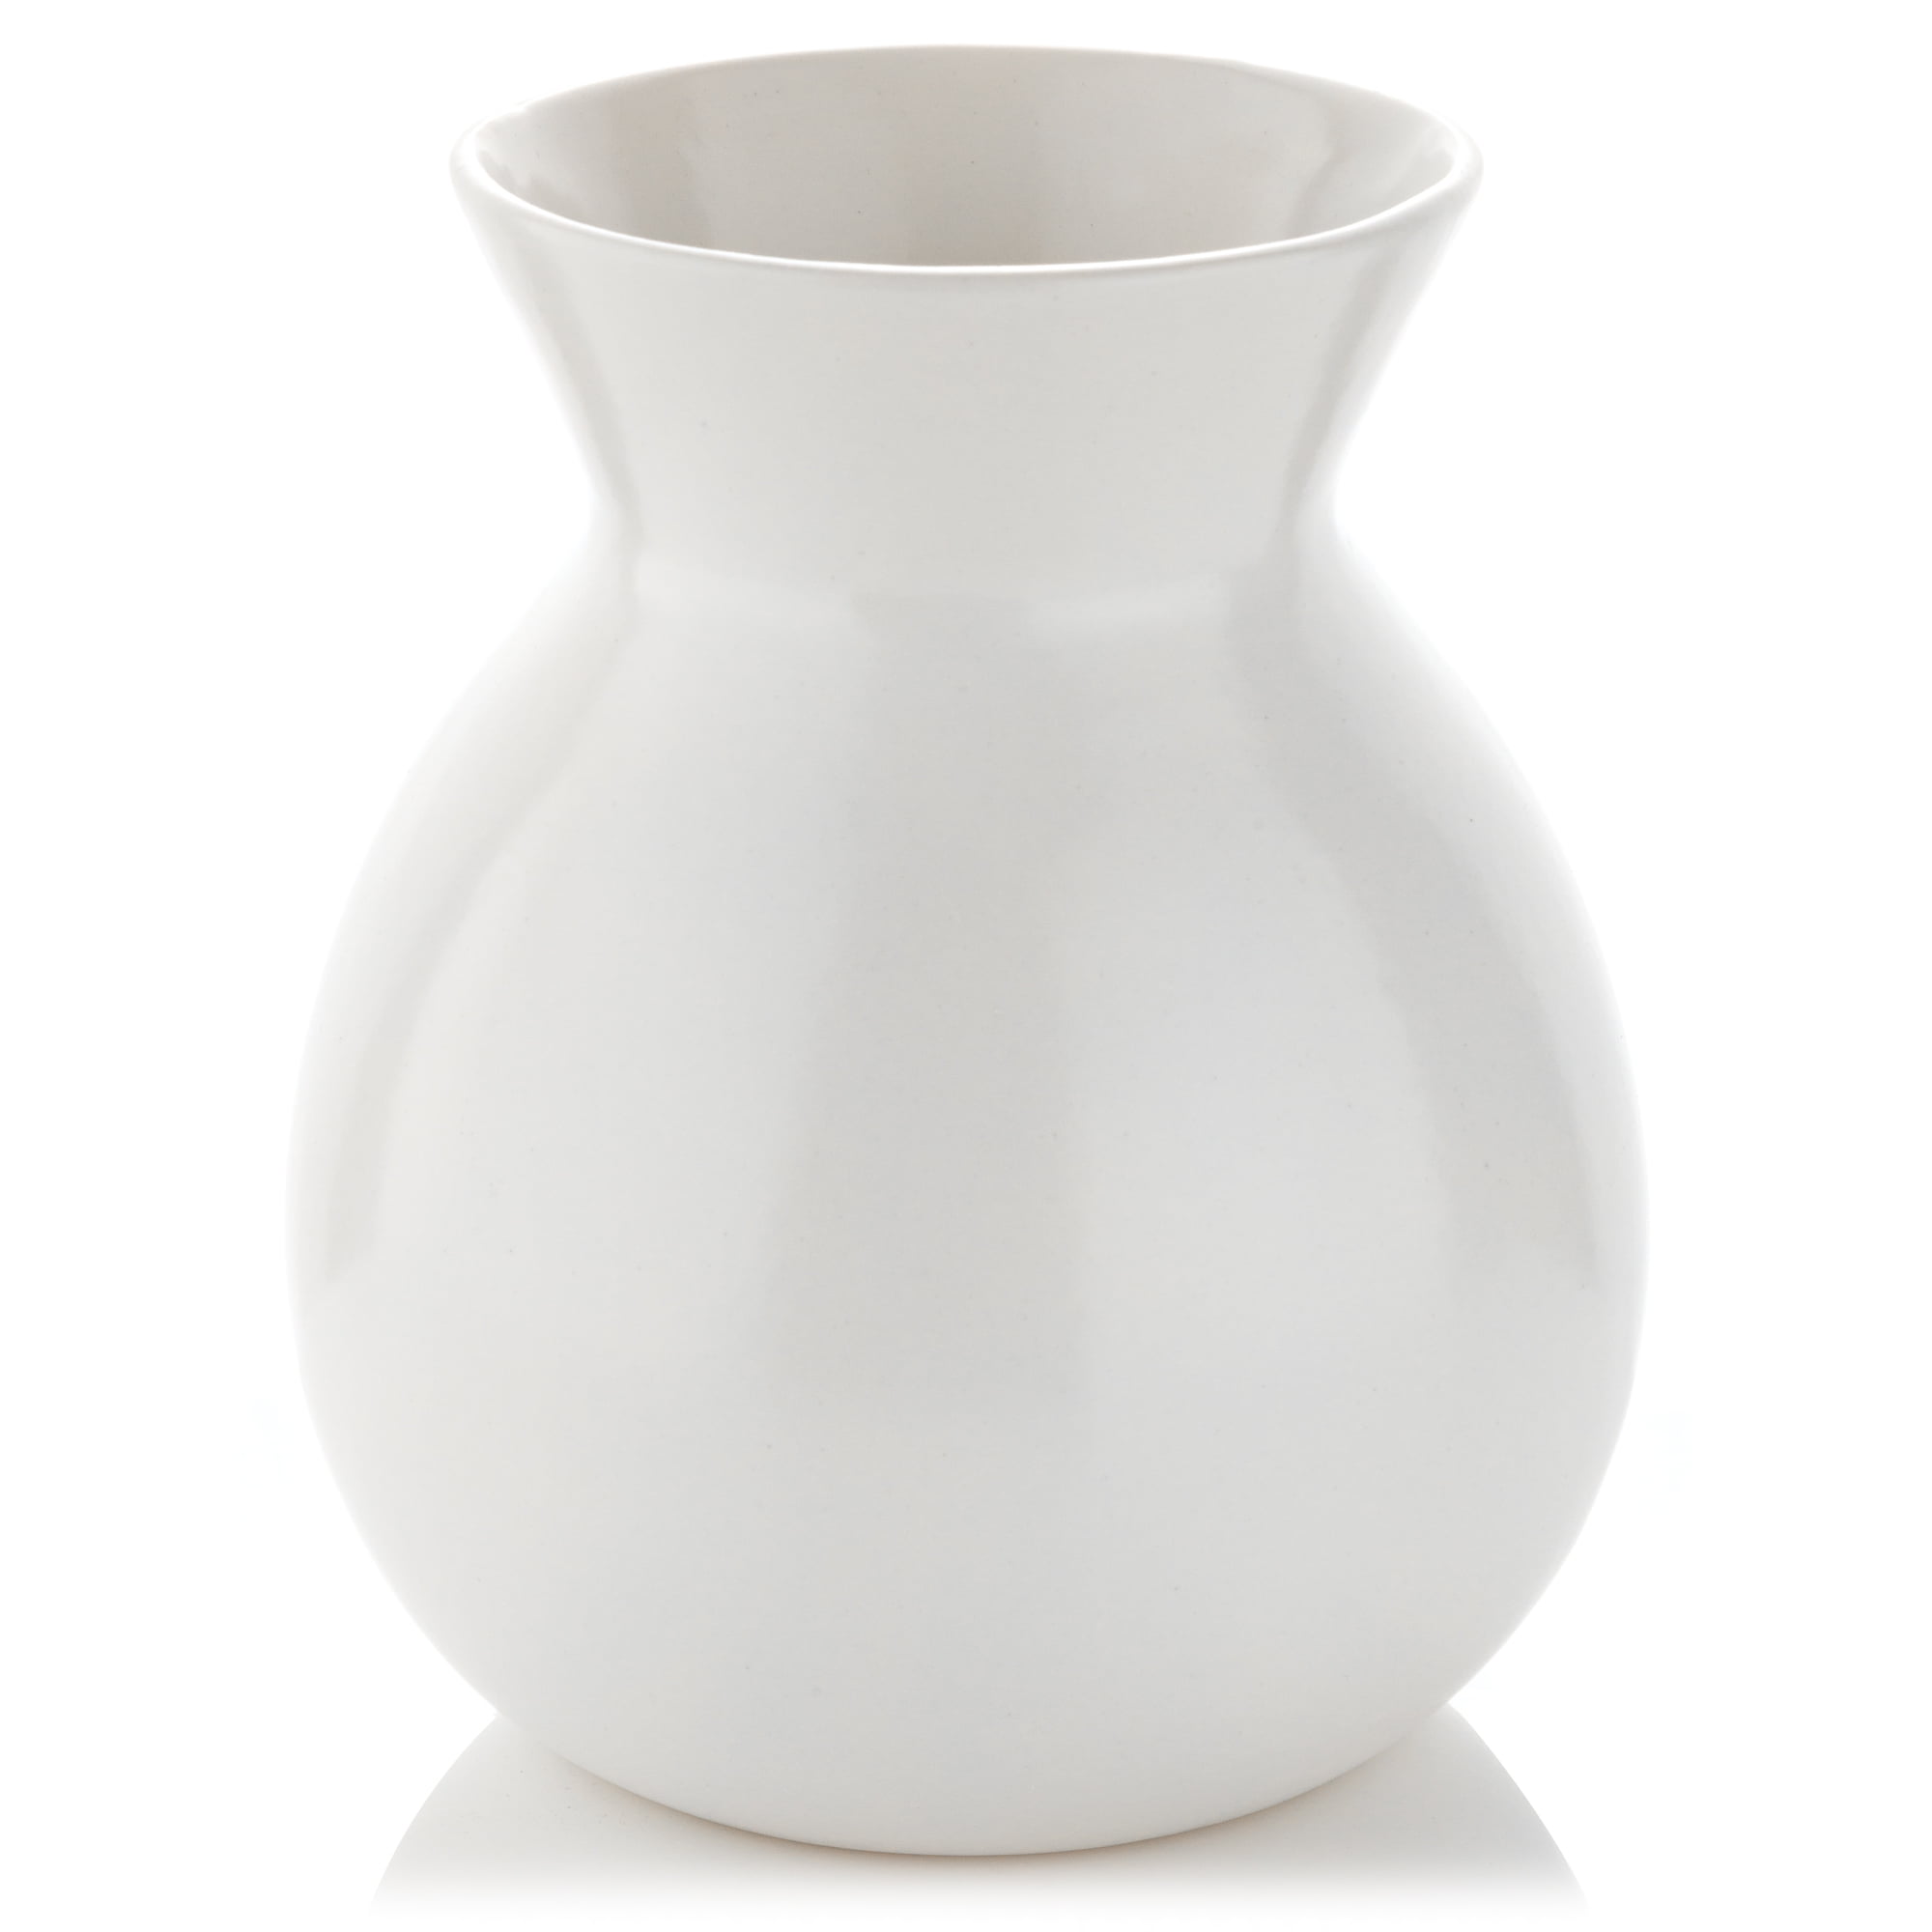 White Ceramic Modern Look Flower Vase Living Room Bedroom Home Decor Gifts 12" 